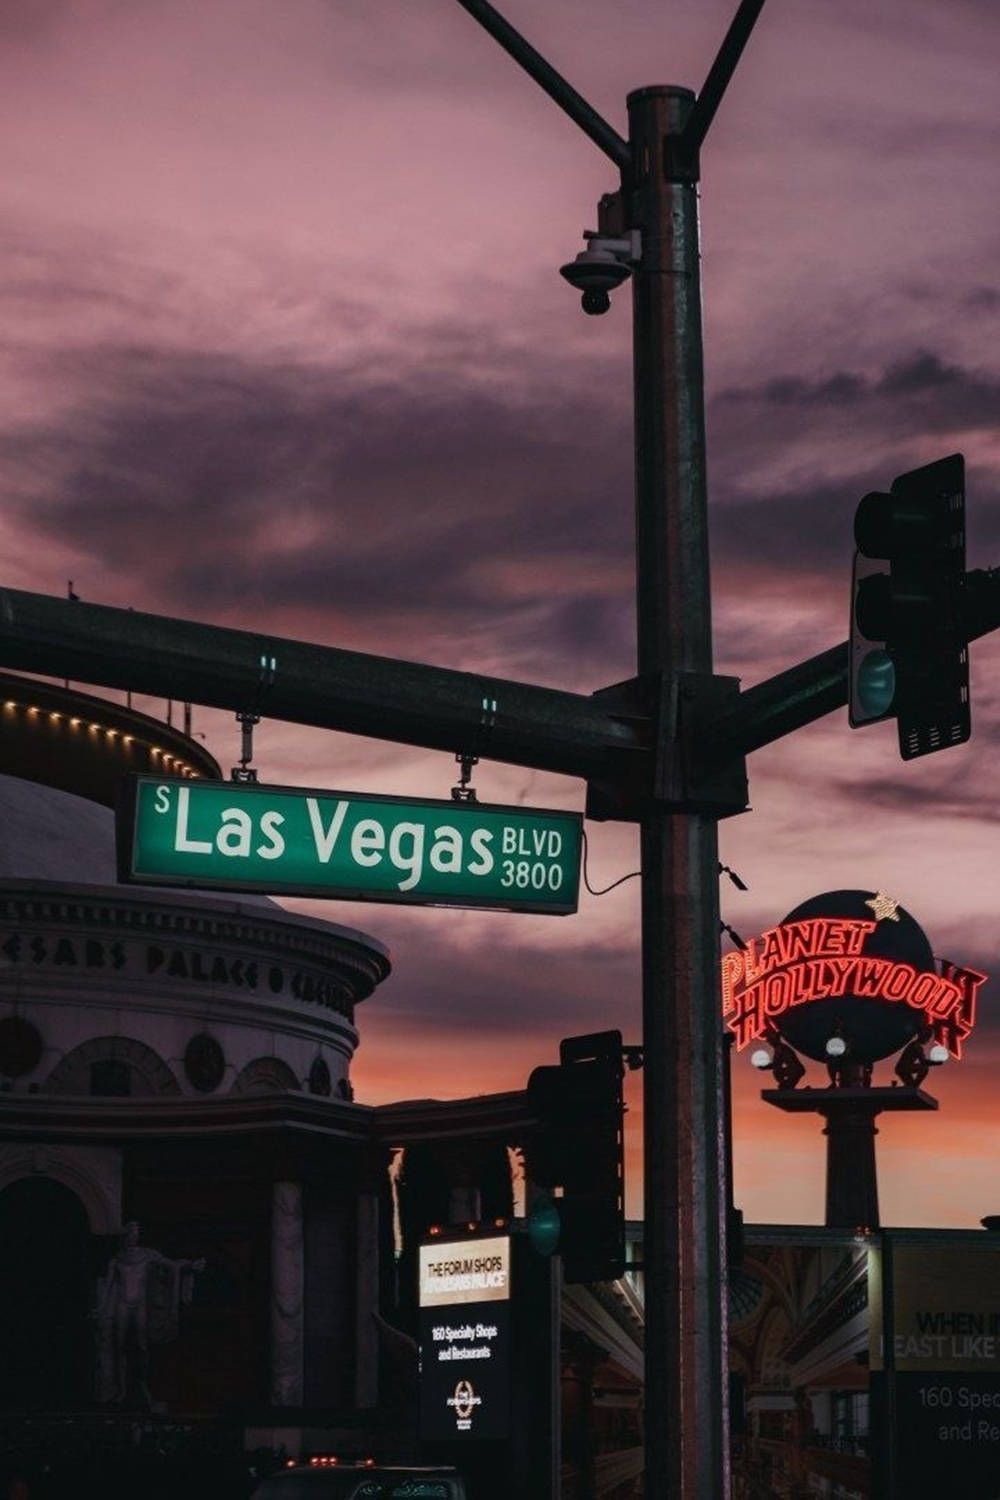 A street sign in las vegas at night - Las Vegas